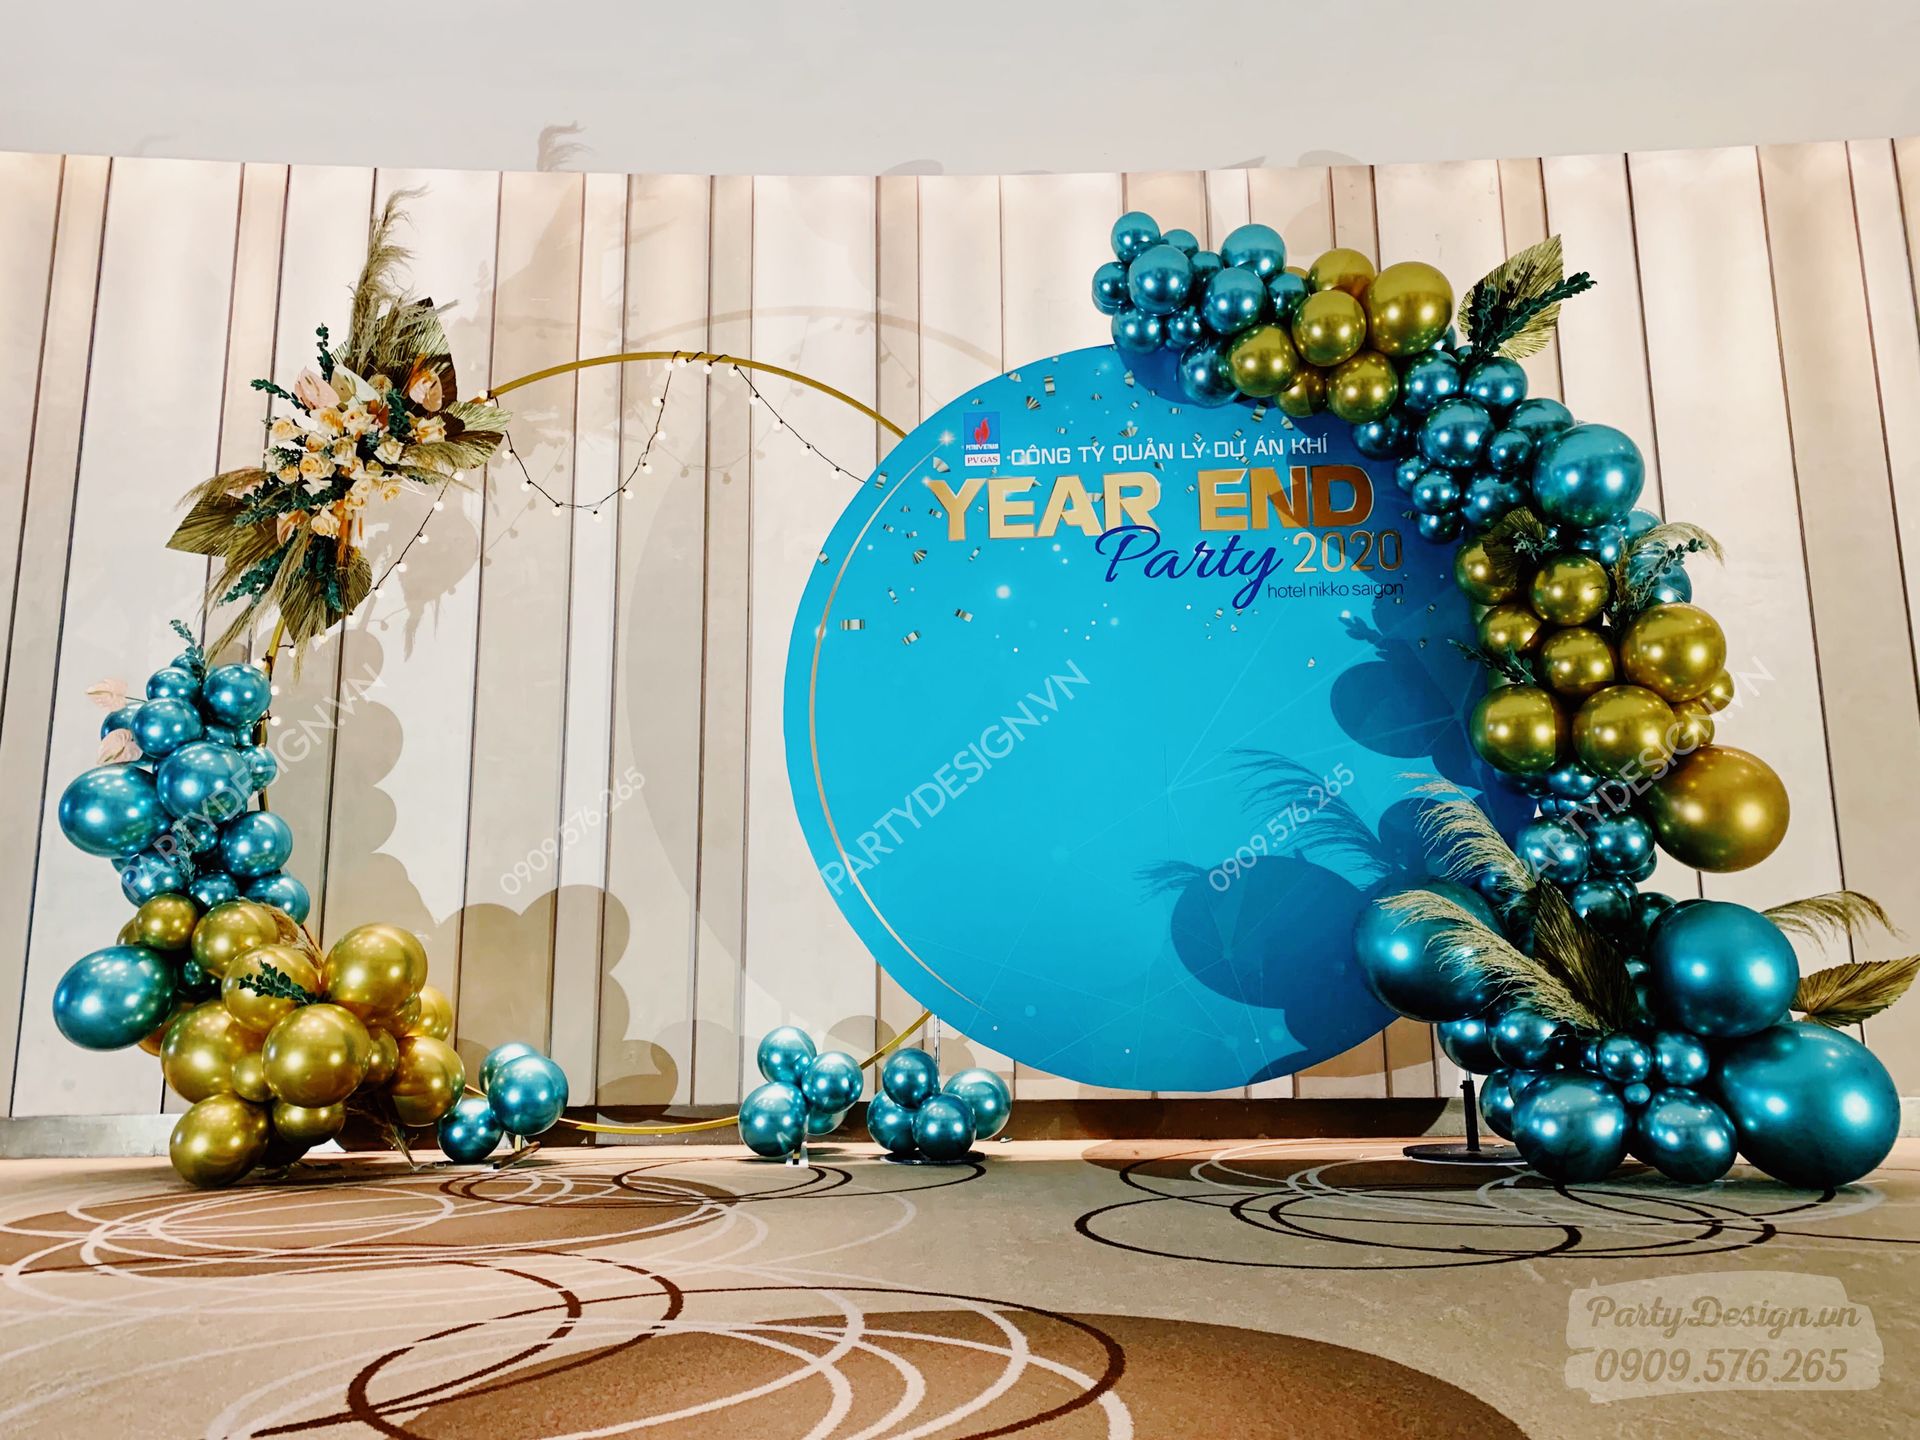 Trang trí Year End Party, tất niên PV GAS - backdrop chụp hình tại sảnh -  Party Design